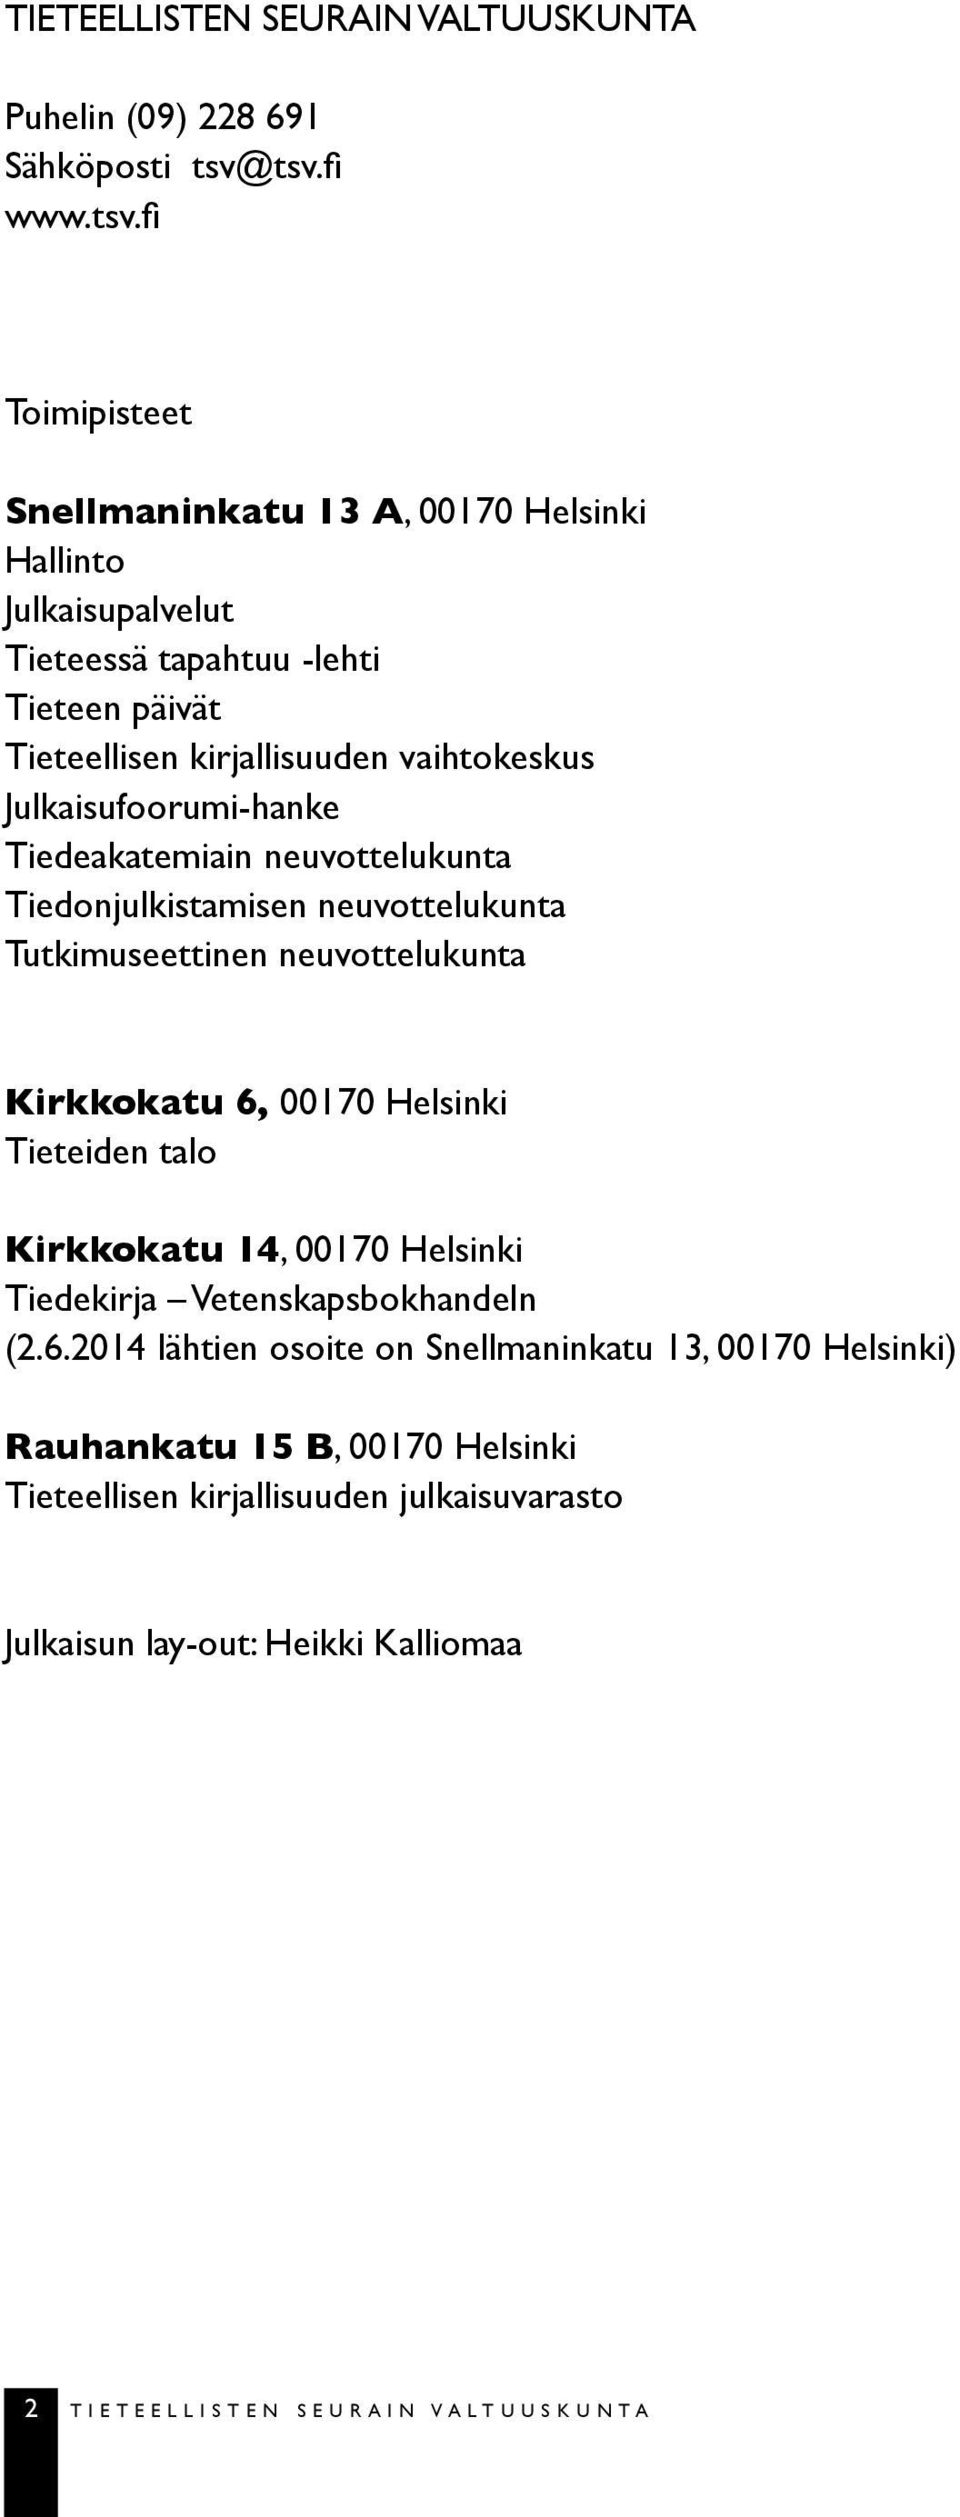 vaihtokeskus Julkaisufoorumi-hanke Tiedeakatemiain neuvottelukunta Tiedonjulkistamisen neuvottelukunta Tutkimuseettinen neuvottelukunta Kirkkokatu 6, 00170 Helsinki